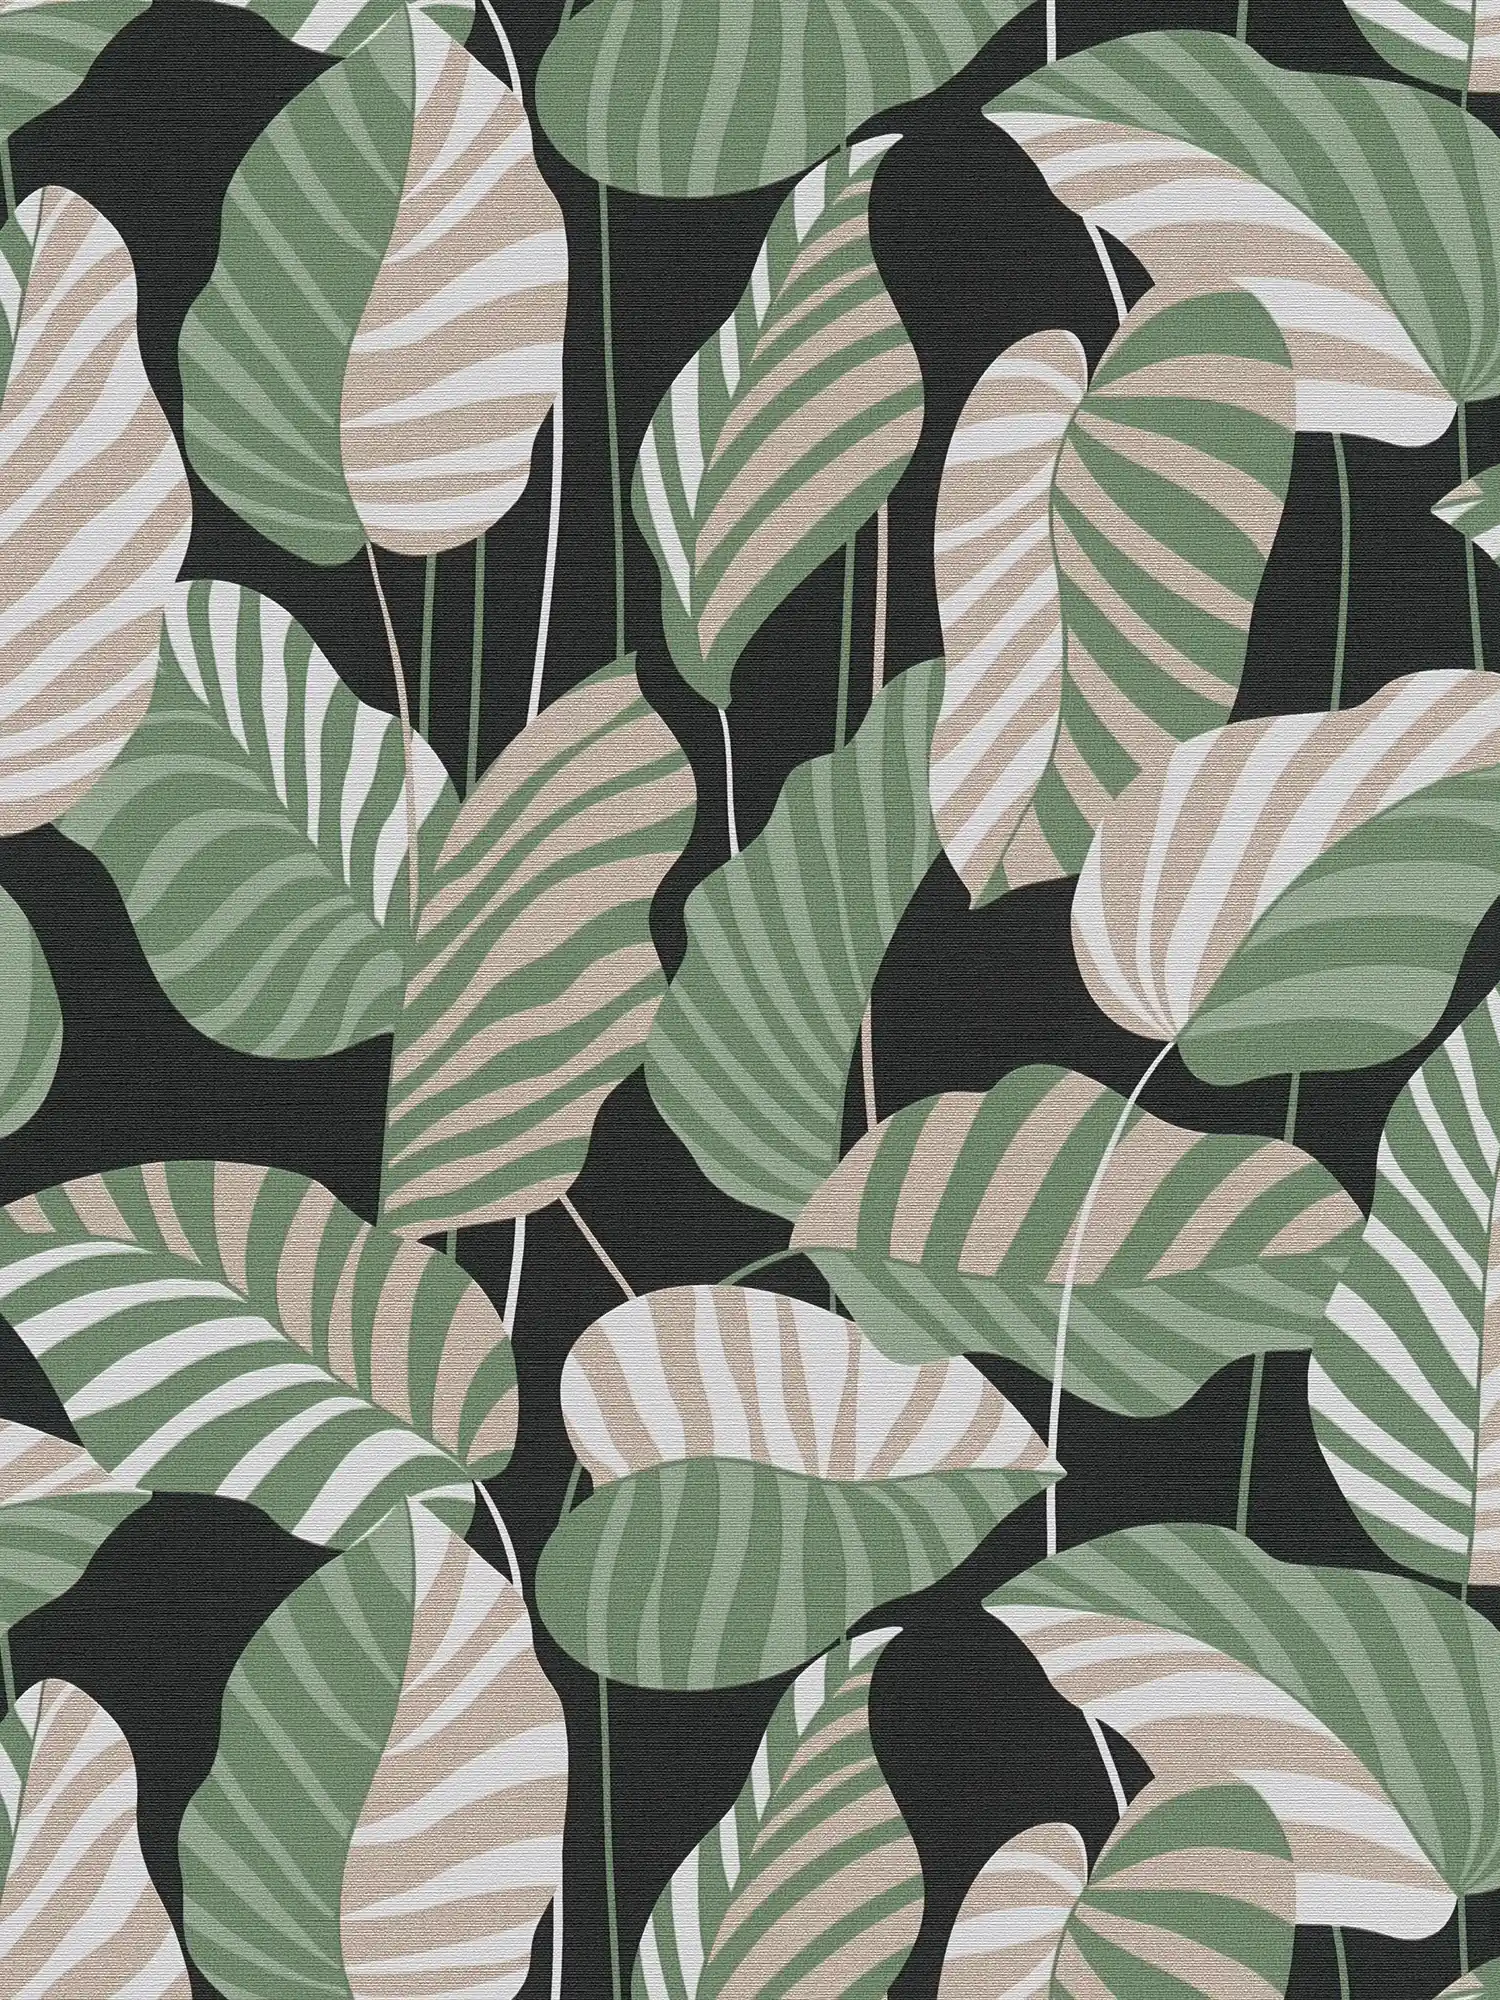 Vliestapete mit Palmblättern in leichtem Glanz – Schwarz, Grün, Gold
